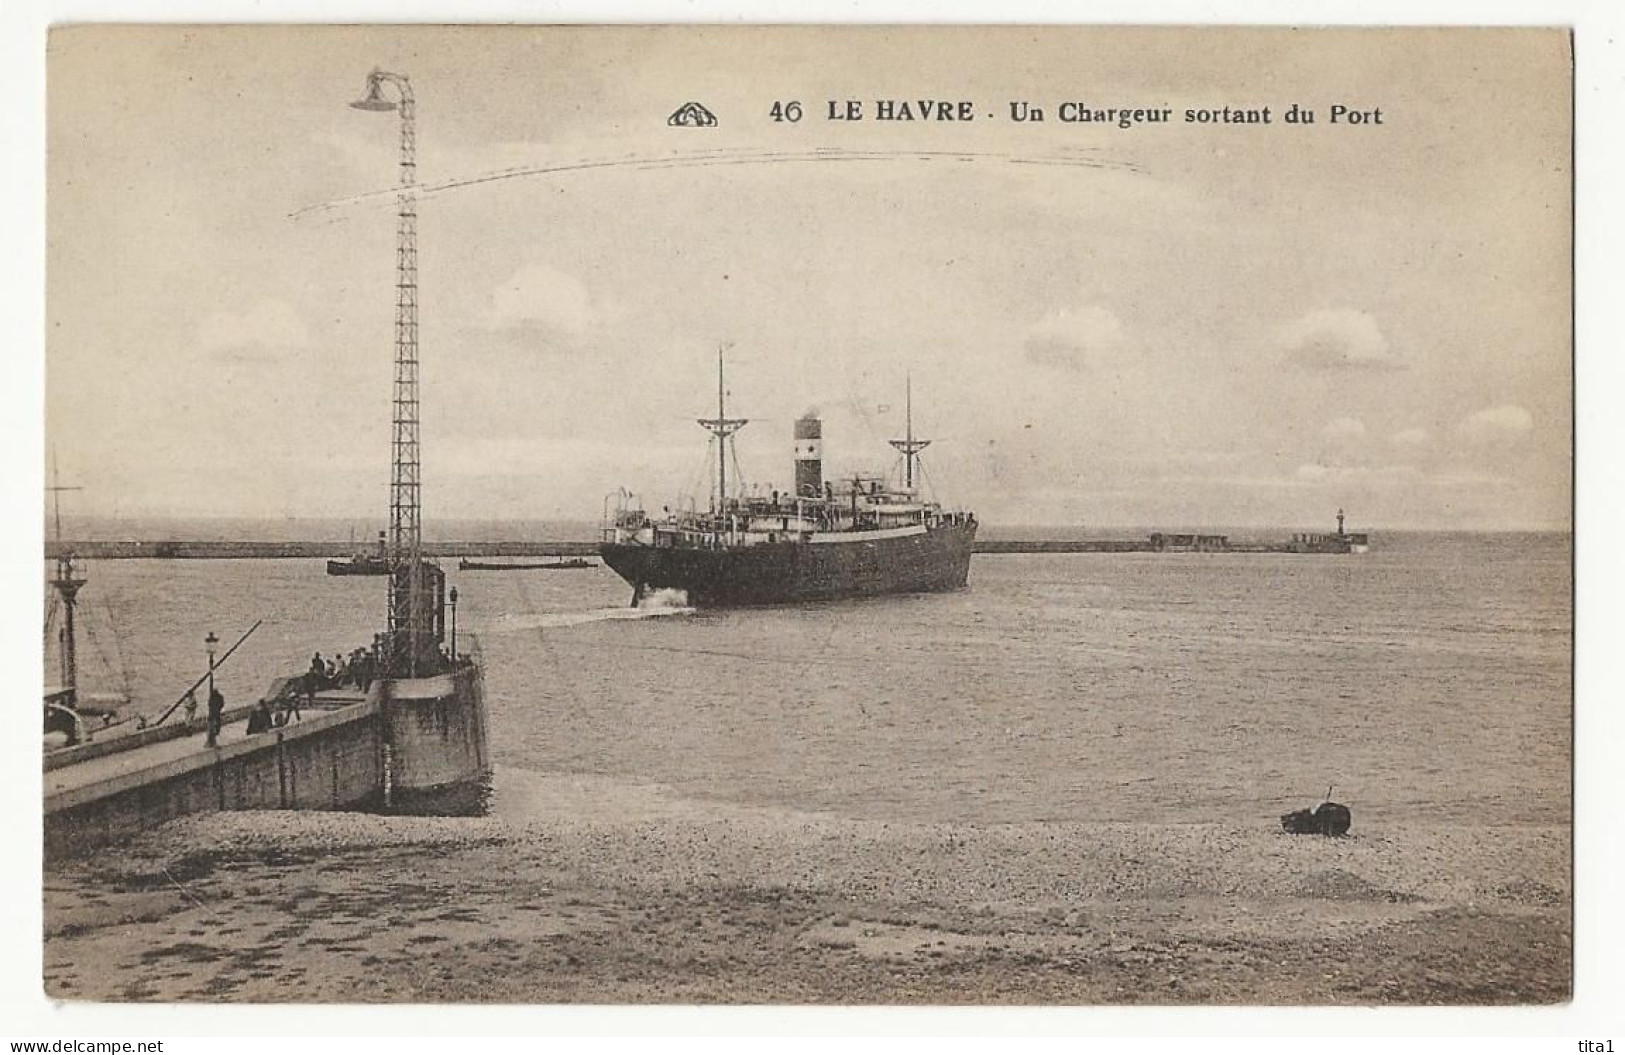 222 - Le Havre (Nr 46) - Un Chargeur Sortant Du Port - Port